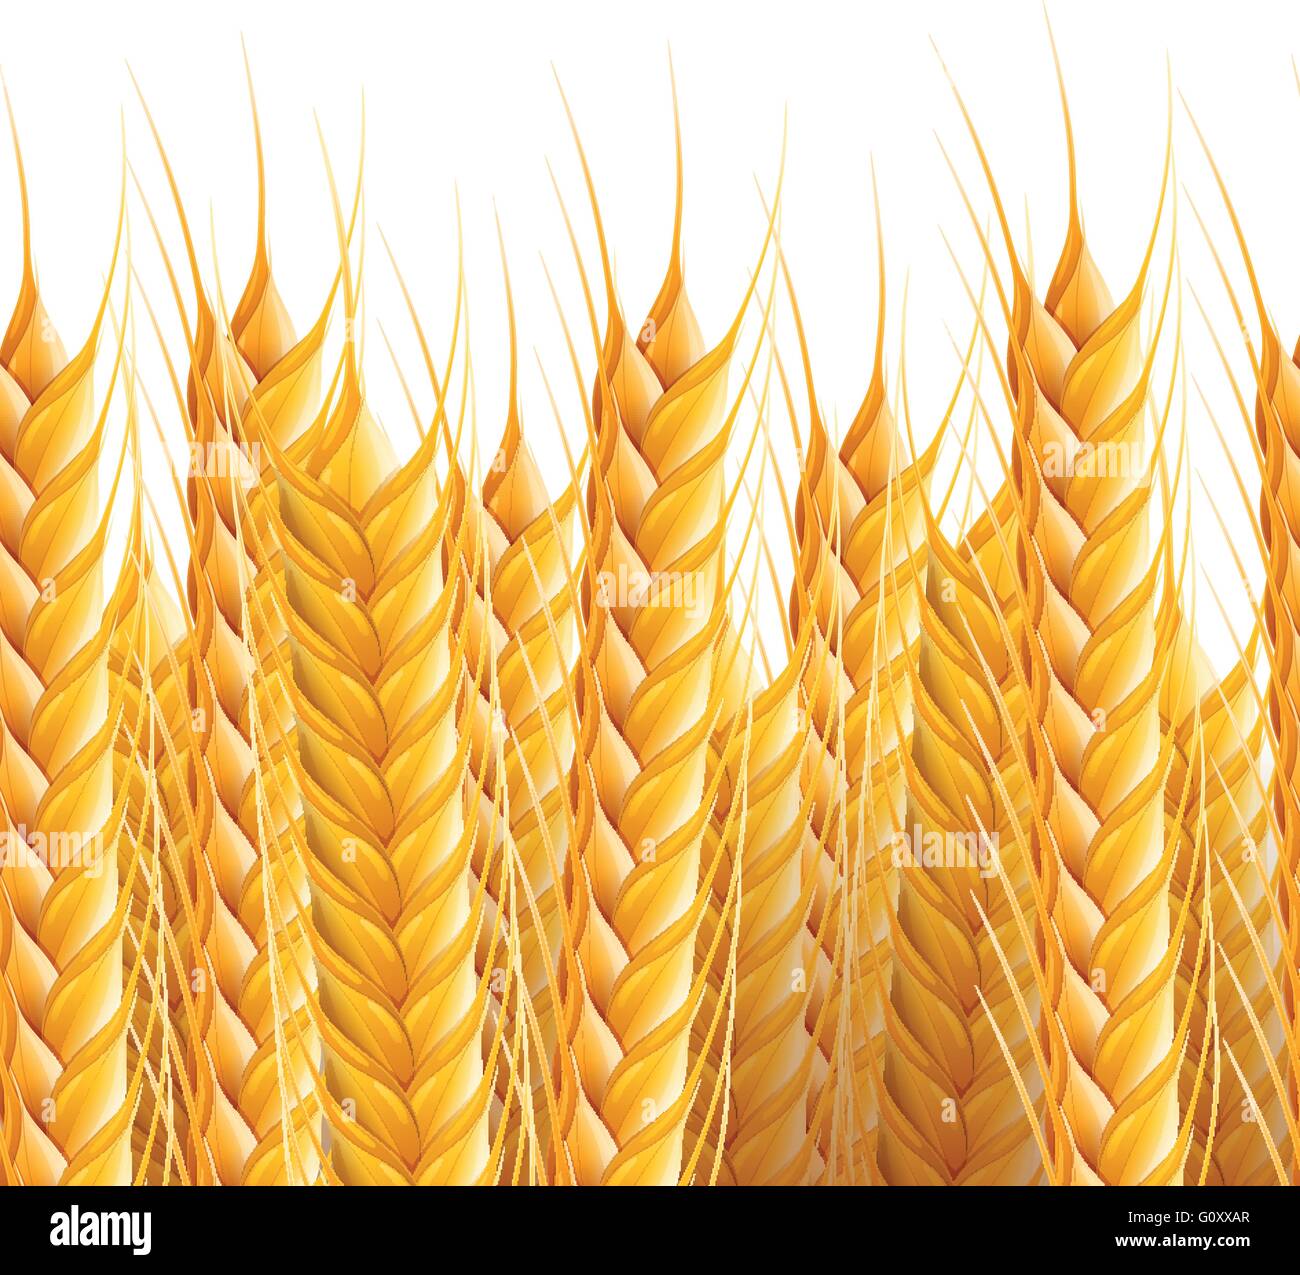 Realistische nahtlose Weizen Hintergrund Vektorgrafik. Stock Vektor